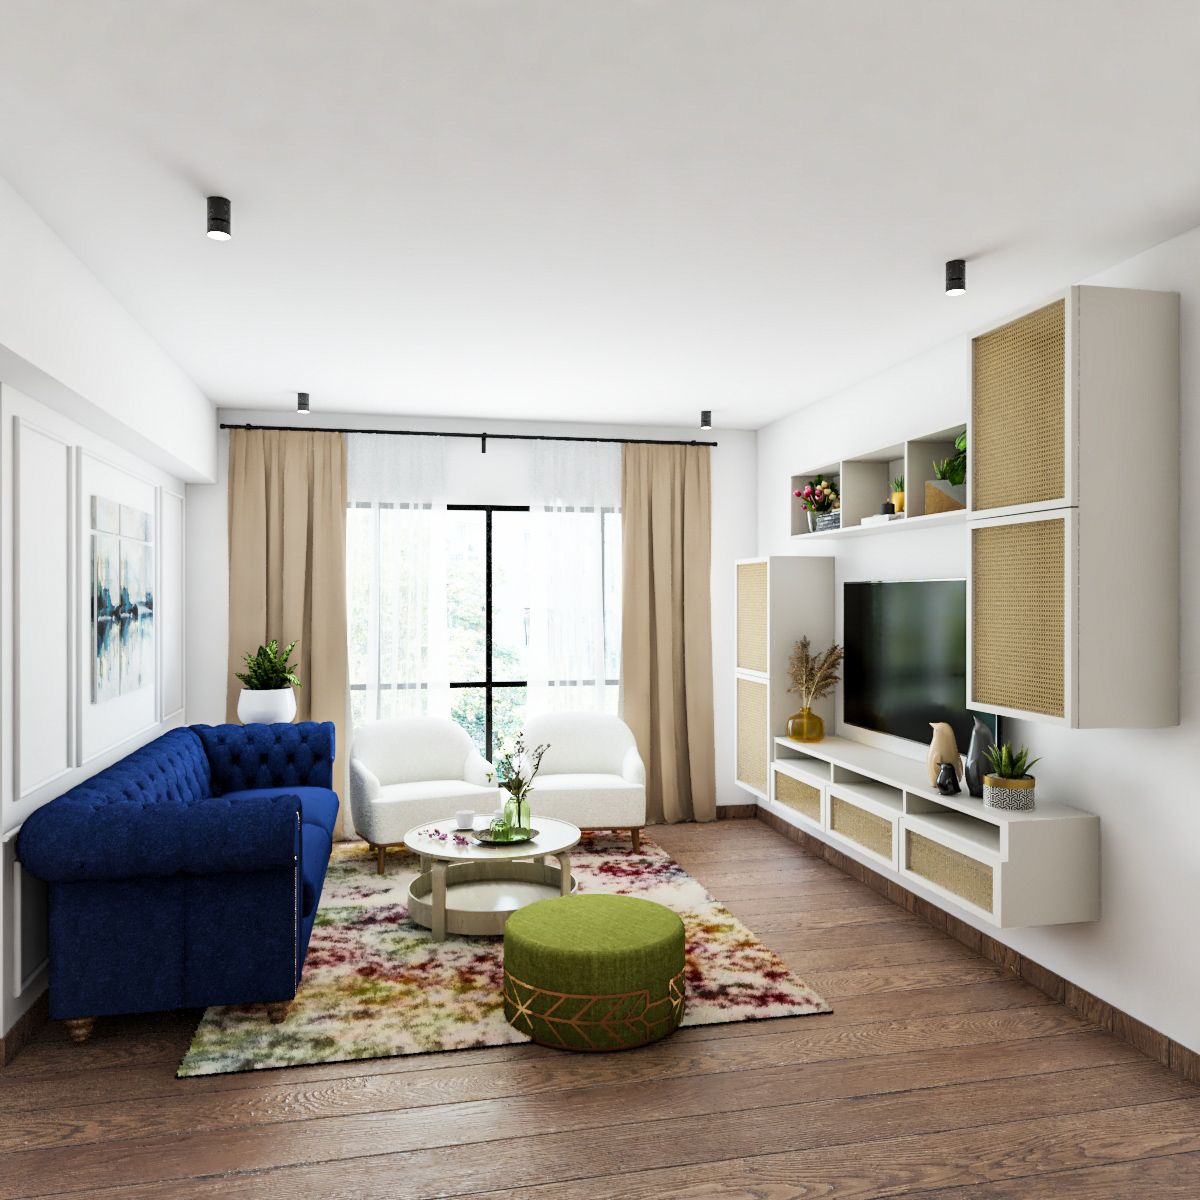 Contemporary Living Room Design With Blue Sofa